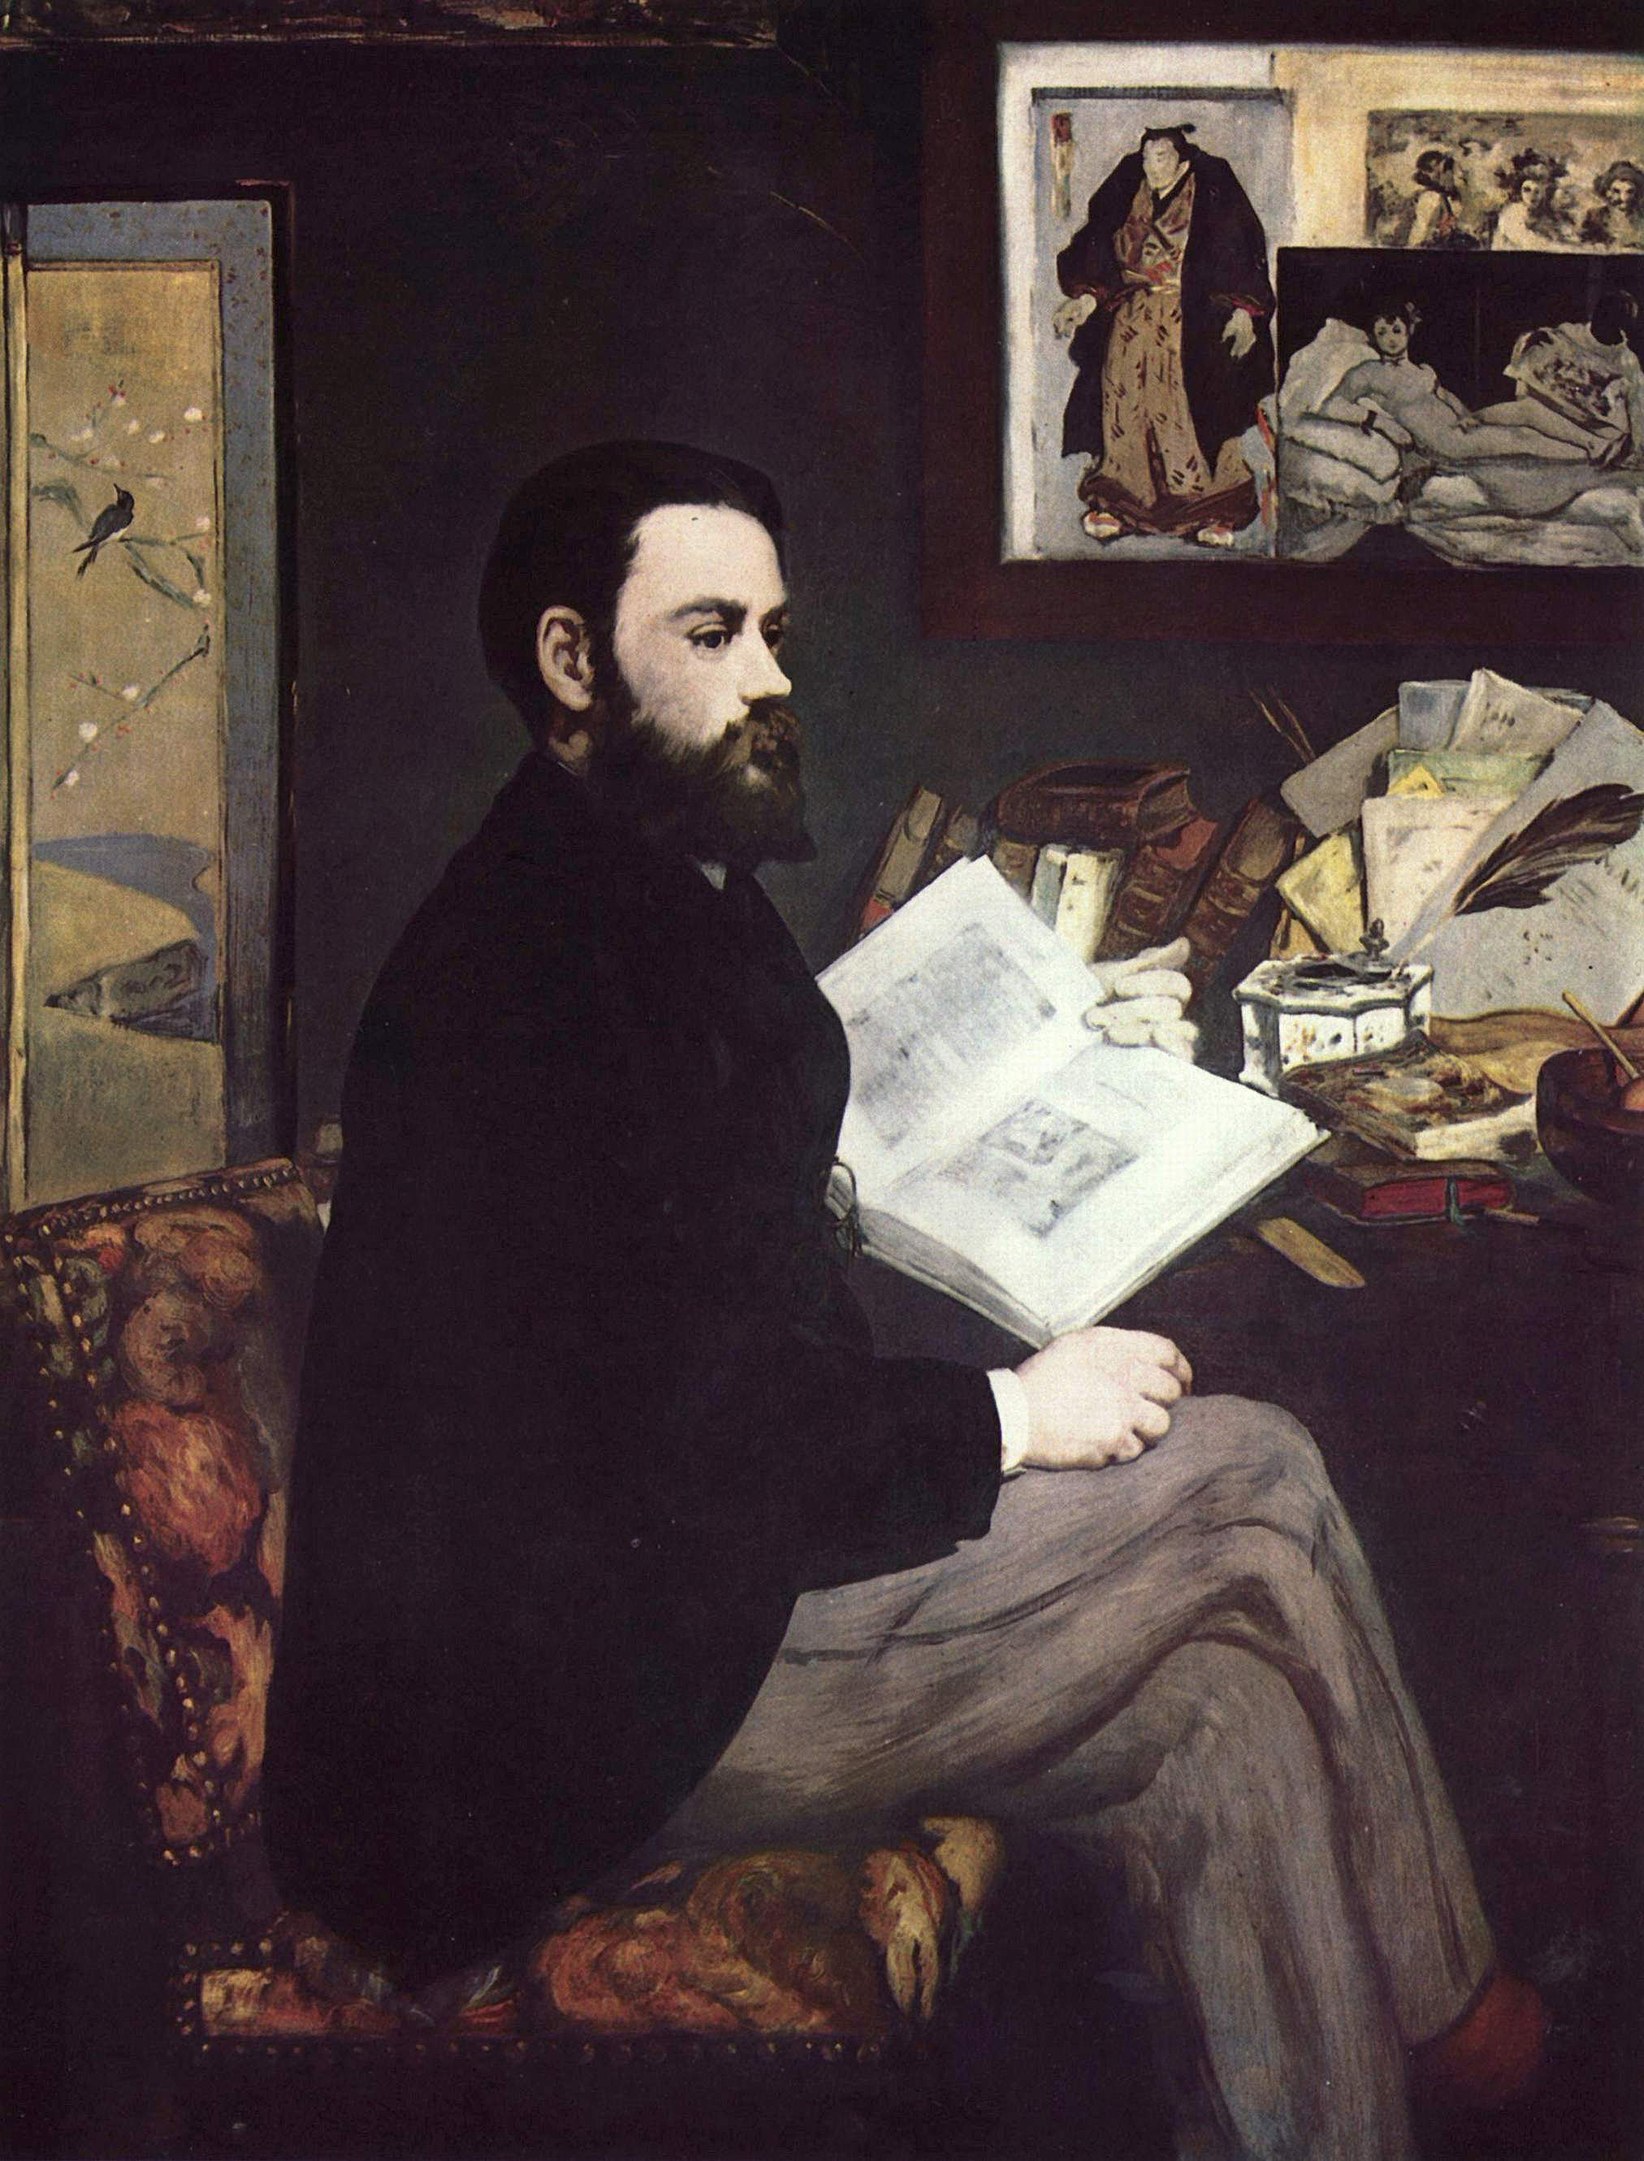 Émile Zola by Édouard Manet - 1868 - 146 x 114 cm Musée d'Orsay